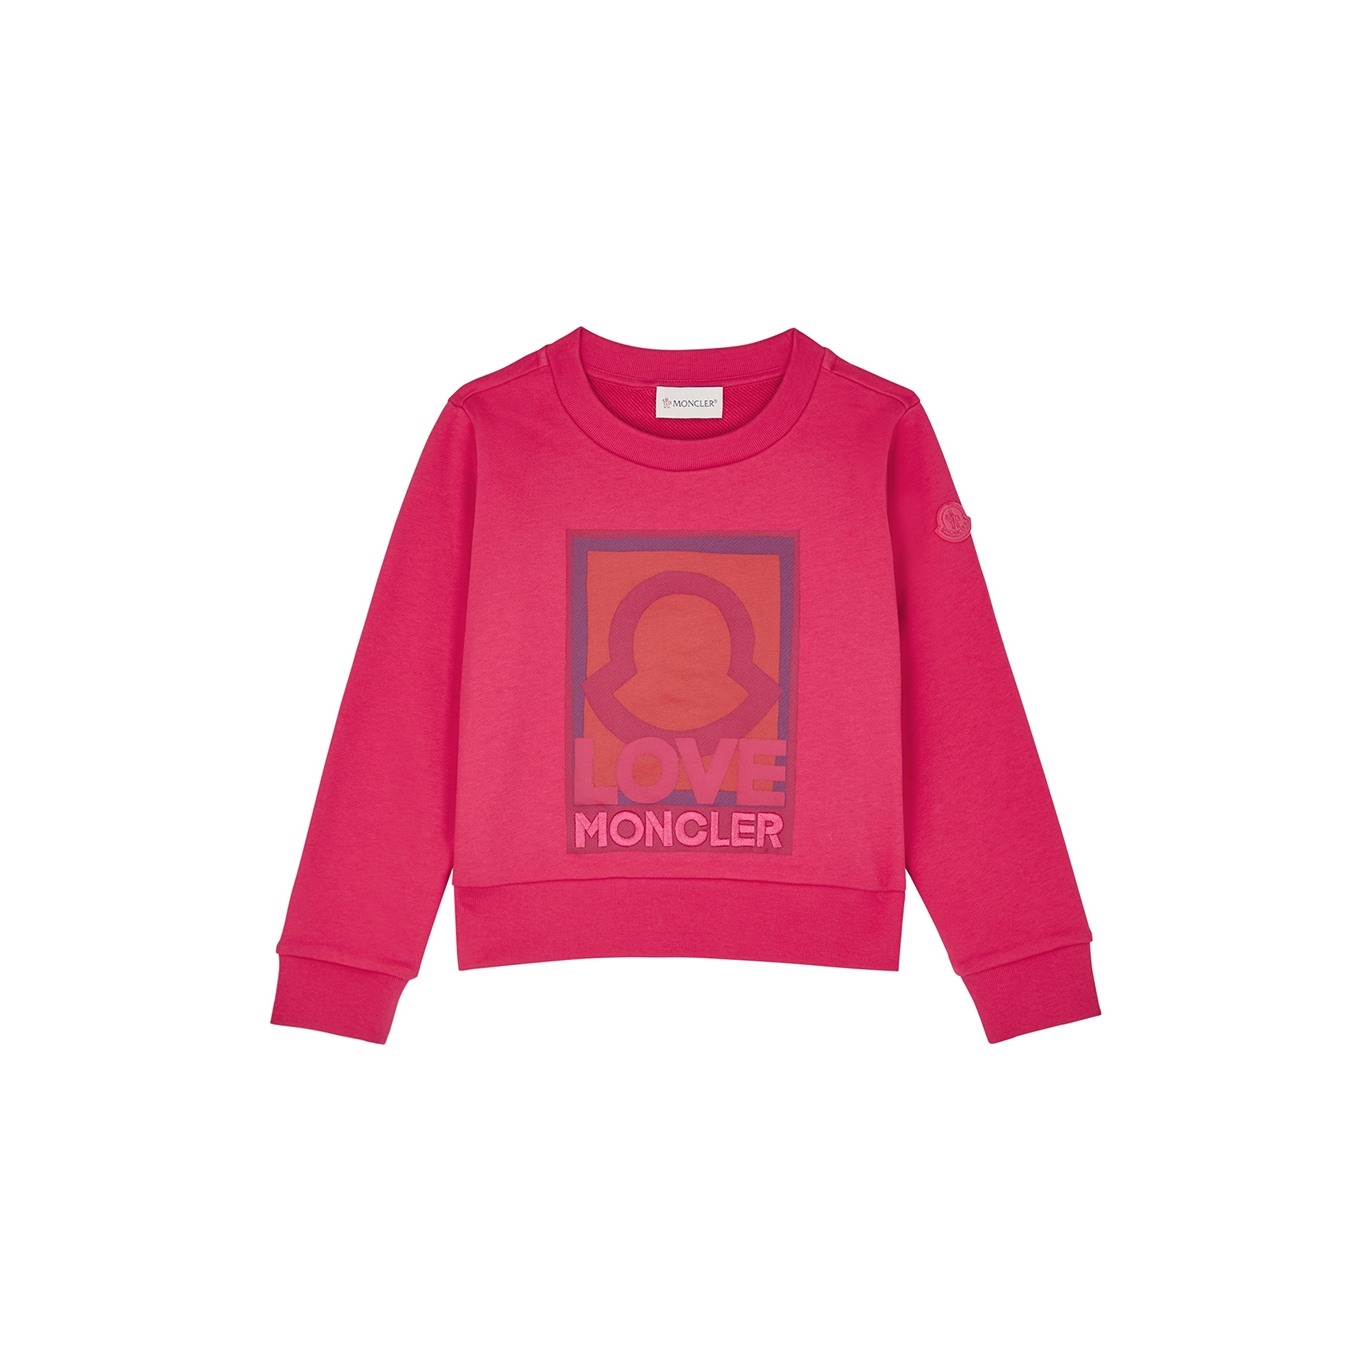 Moncler Kids Printed Cotton Sweatshirt (6 Years) - Pink